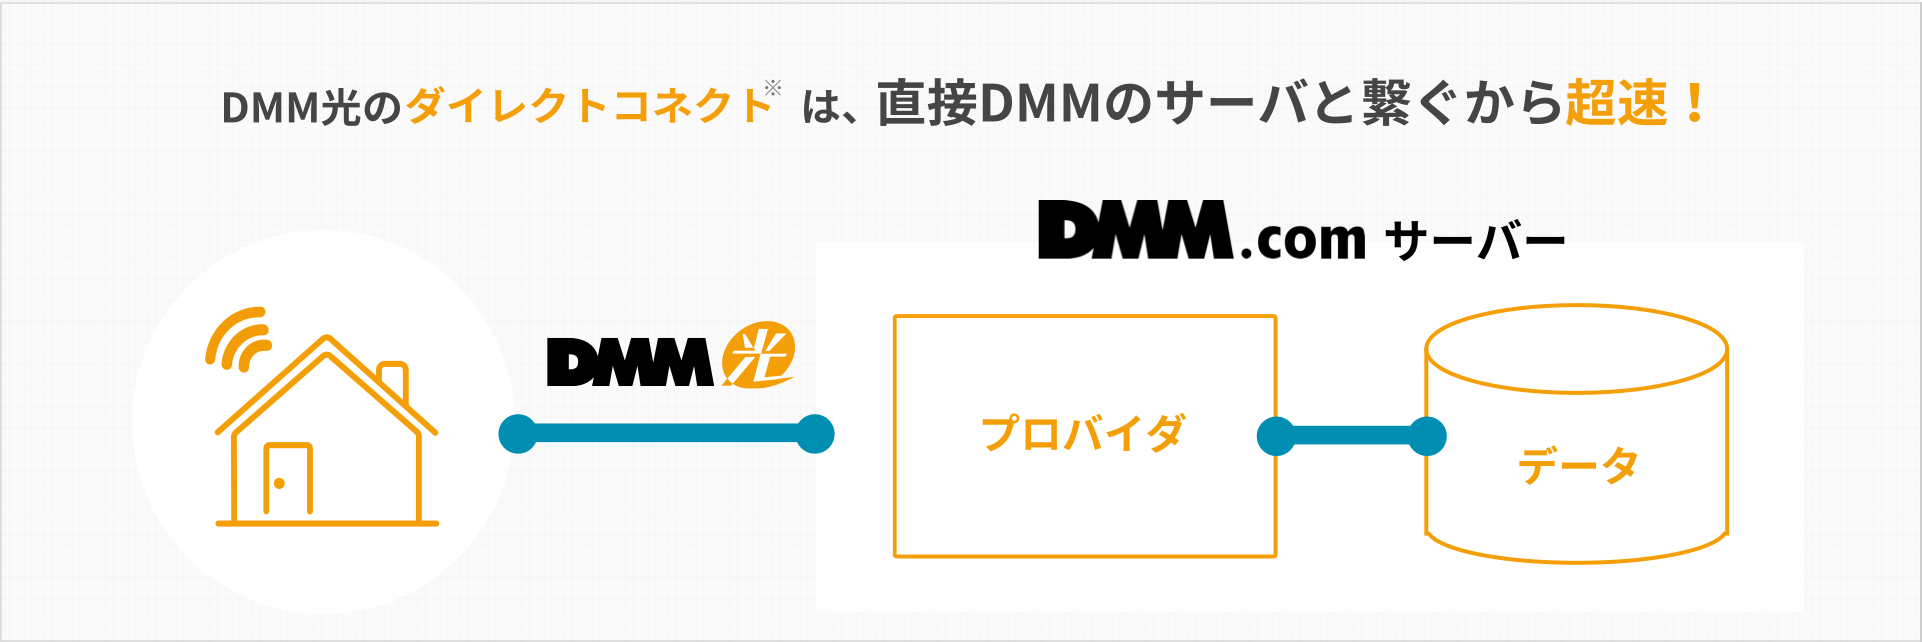 DMM光のダイレクトコネクト(※「v6プラス」対応接続サービスです。)は、直接DMMのサーバと繋ぐから超速！